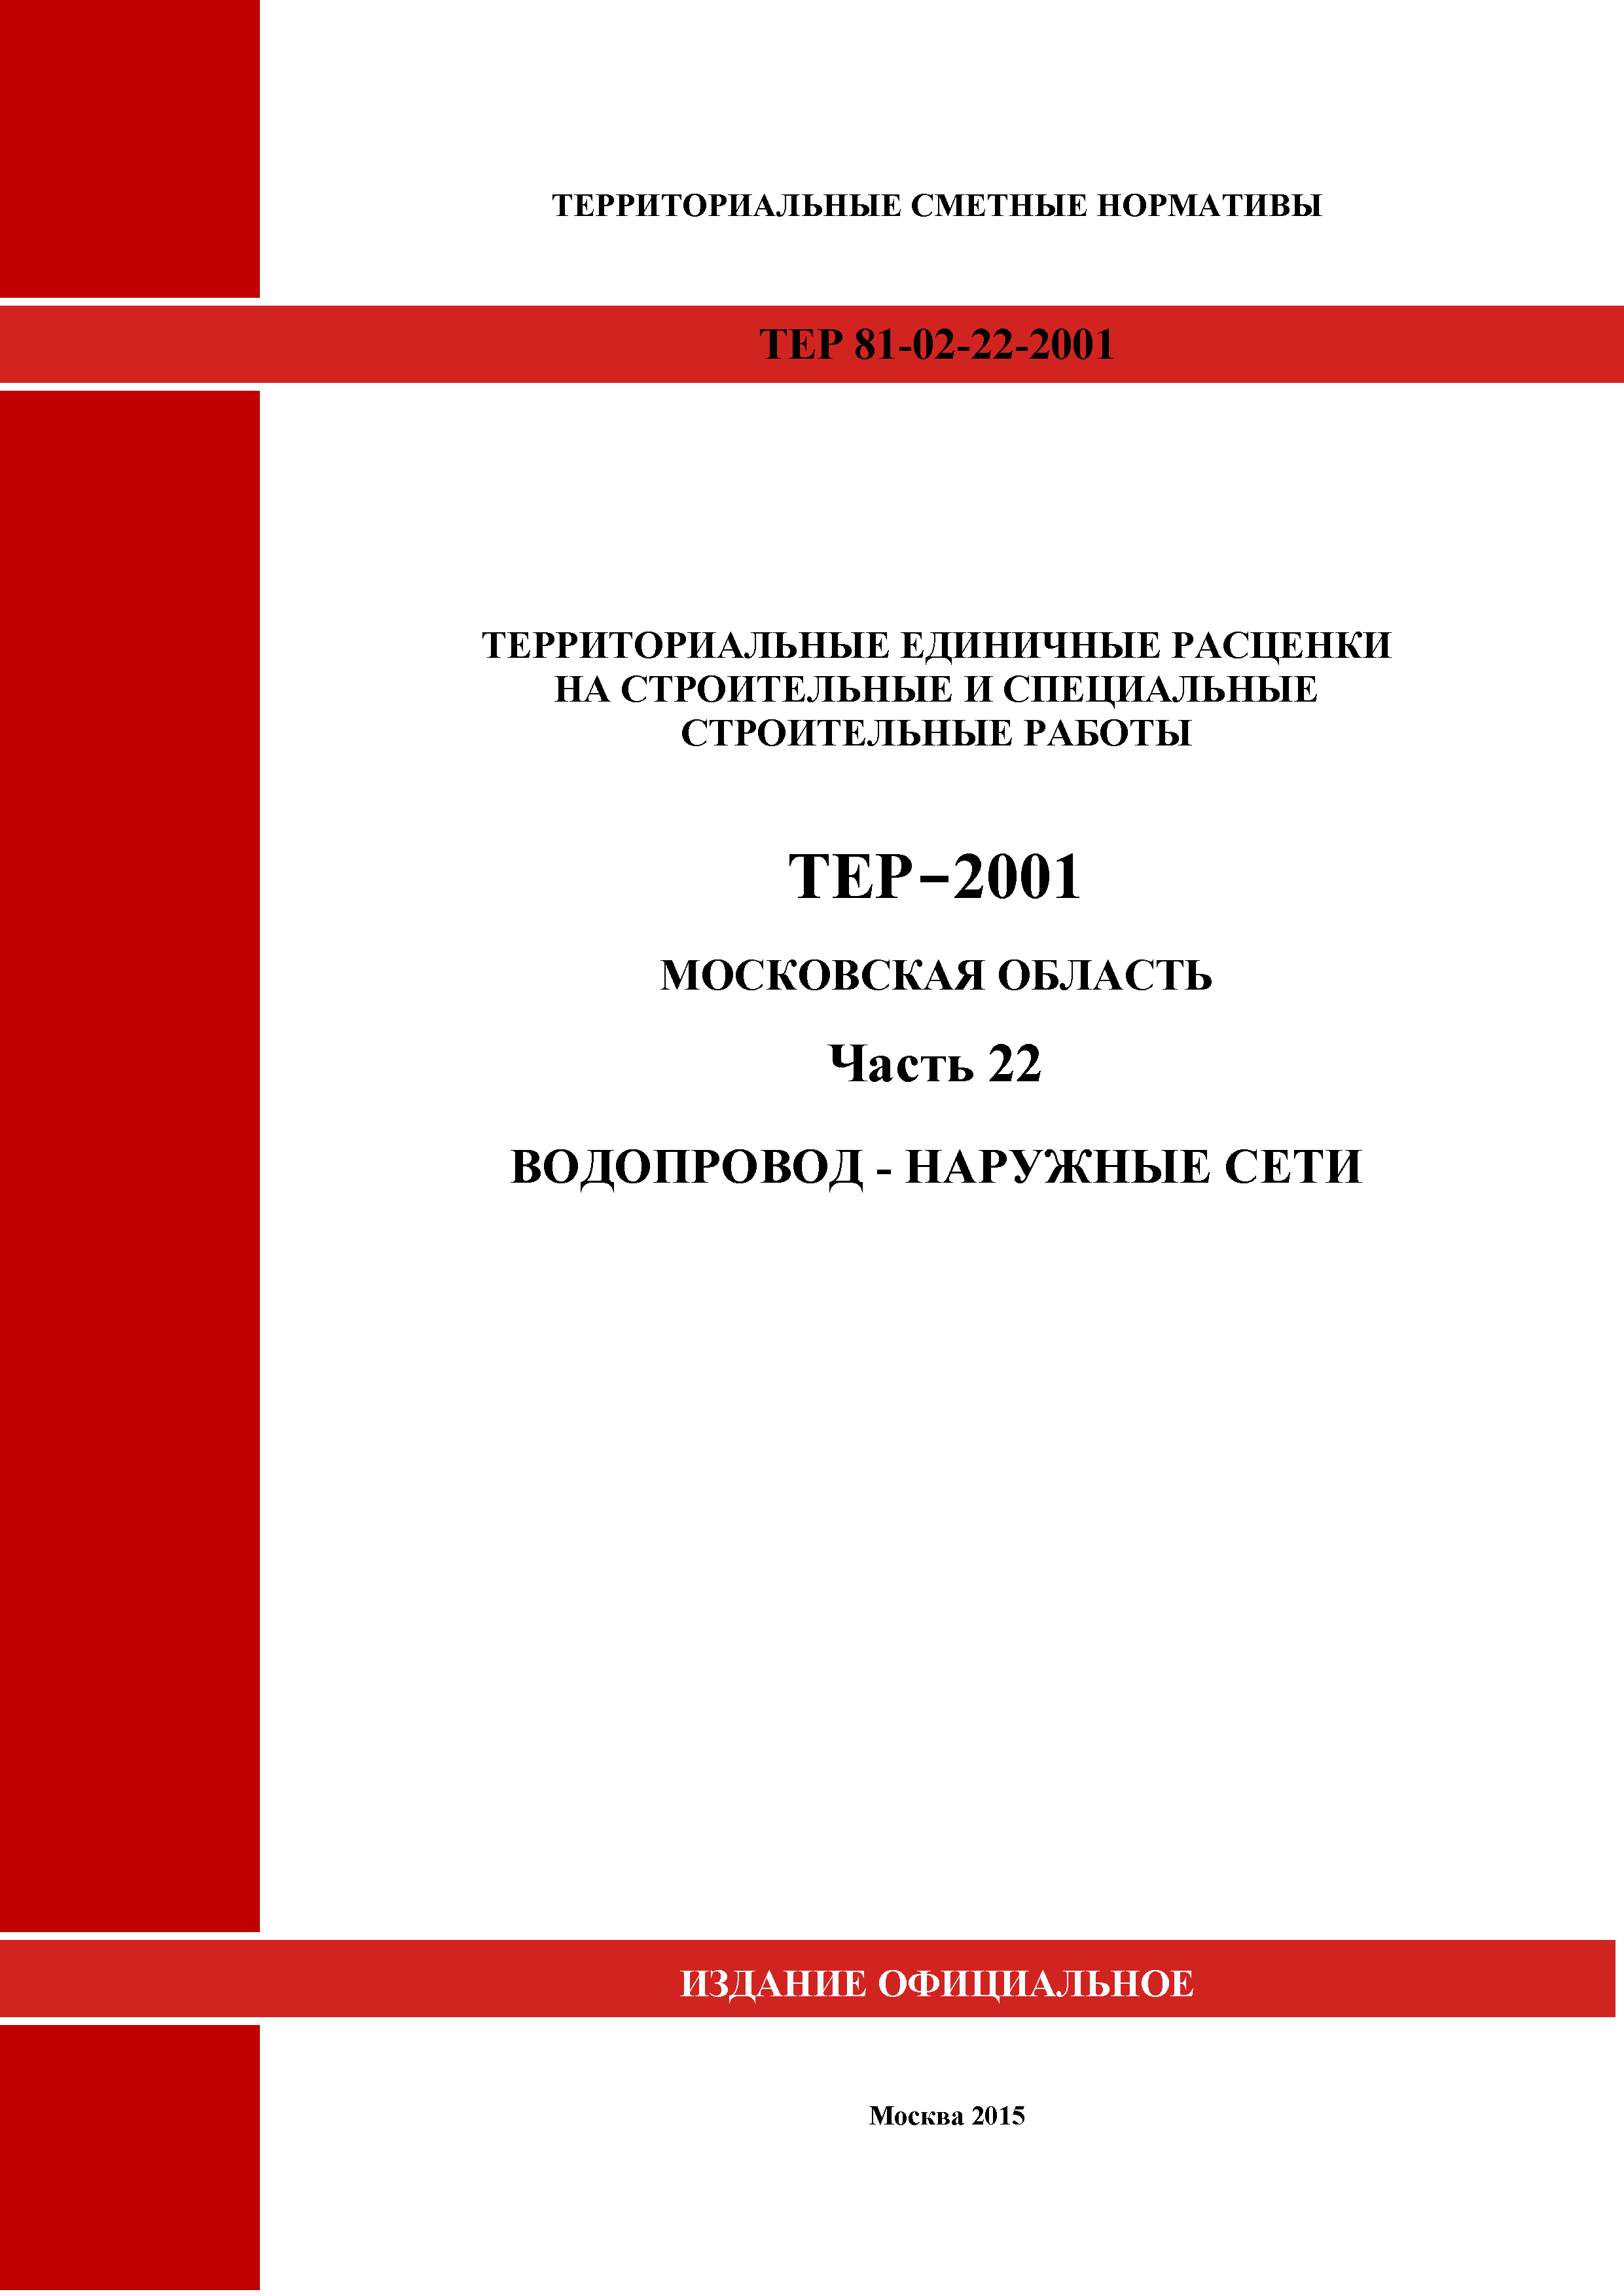 ТЕР 22-2001 Московской области